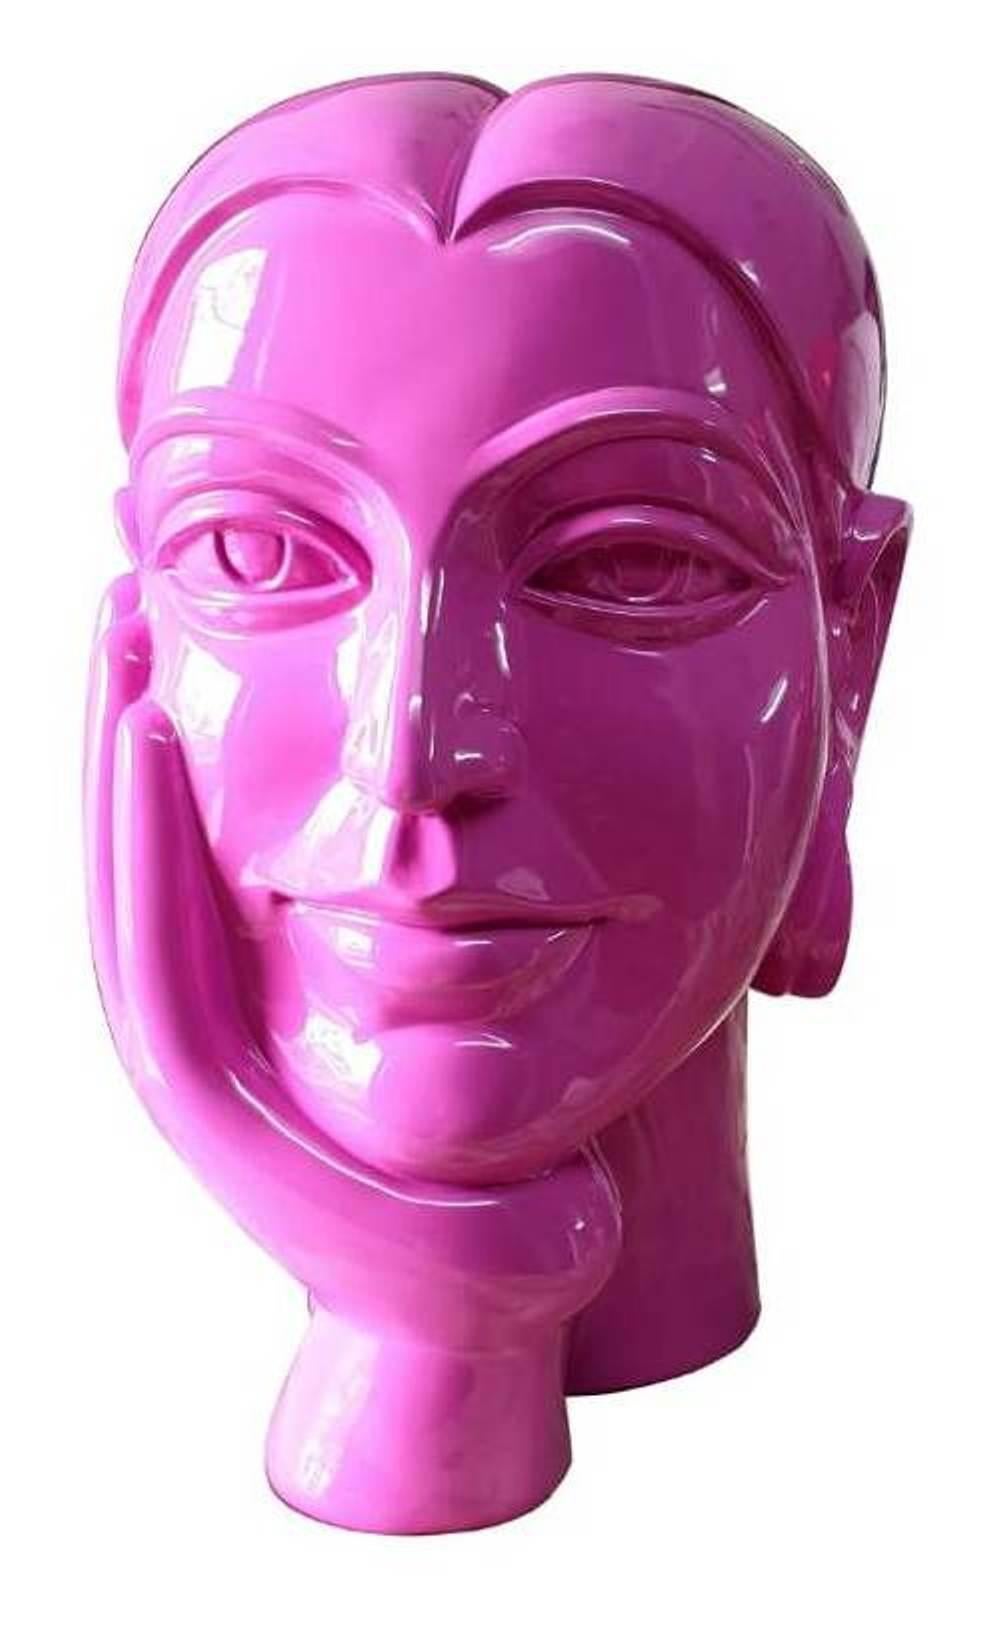 Figurative Sculpture DVS Krishna - Femme en train de réfléchir, une main sur le visage, peinte en rose sur verre en fibre de verre « en stock »